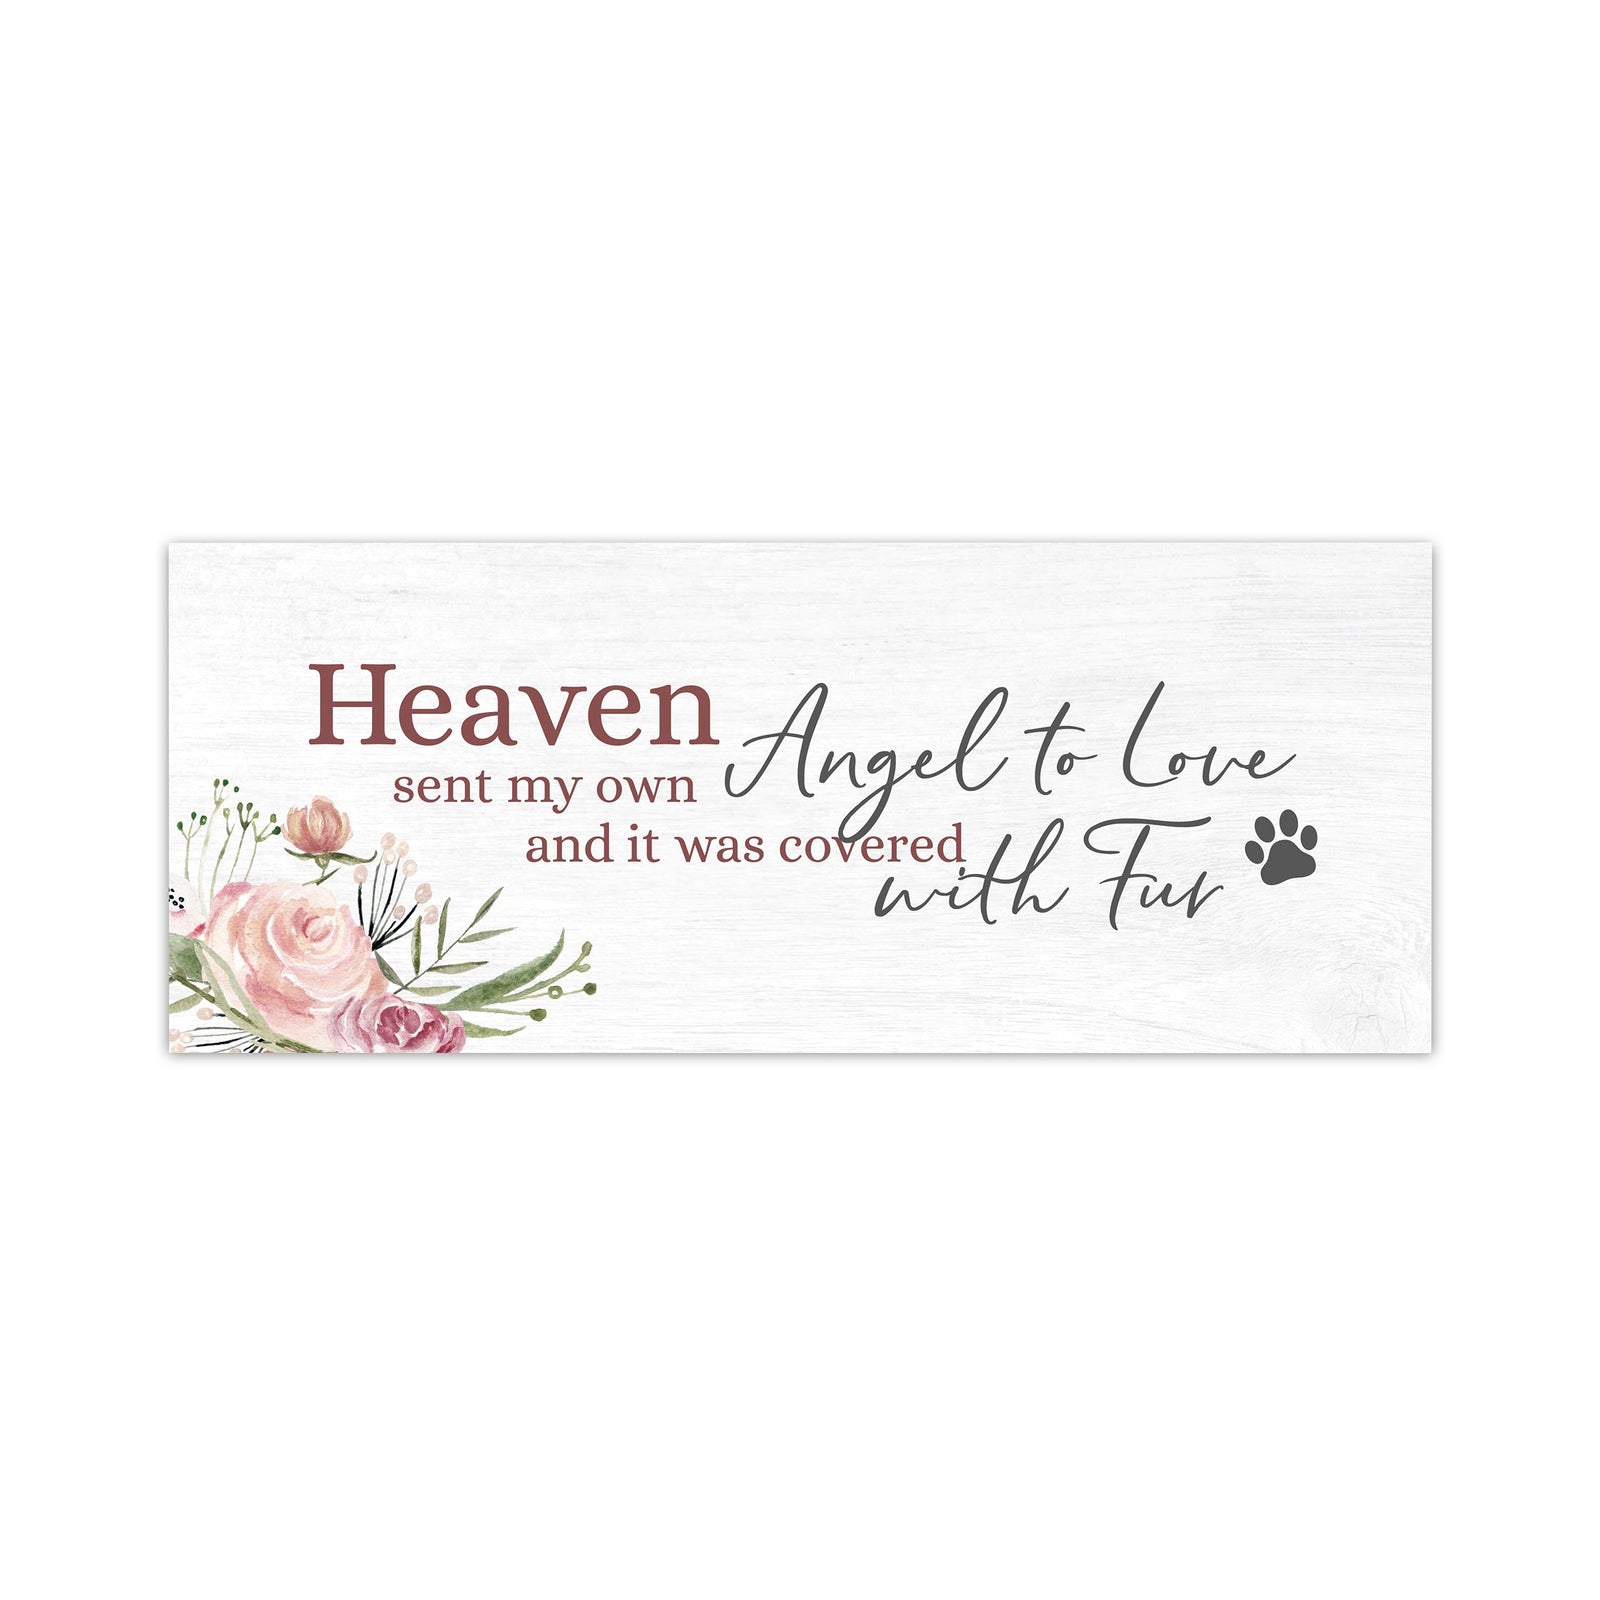 Pet Memorial shelf decor Plaque Décor - Heaven Sent My Own Angel